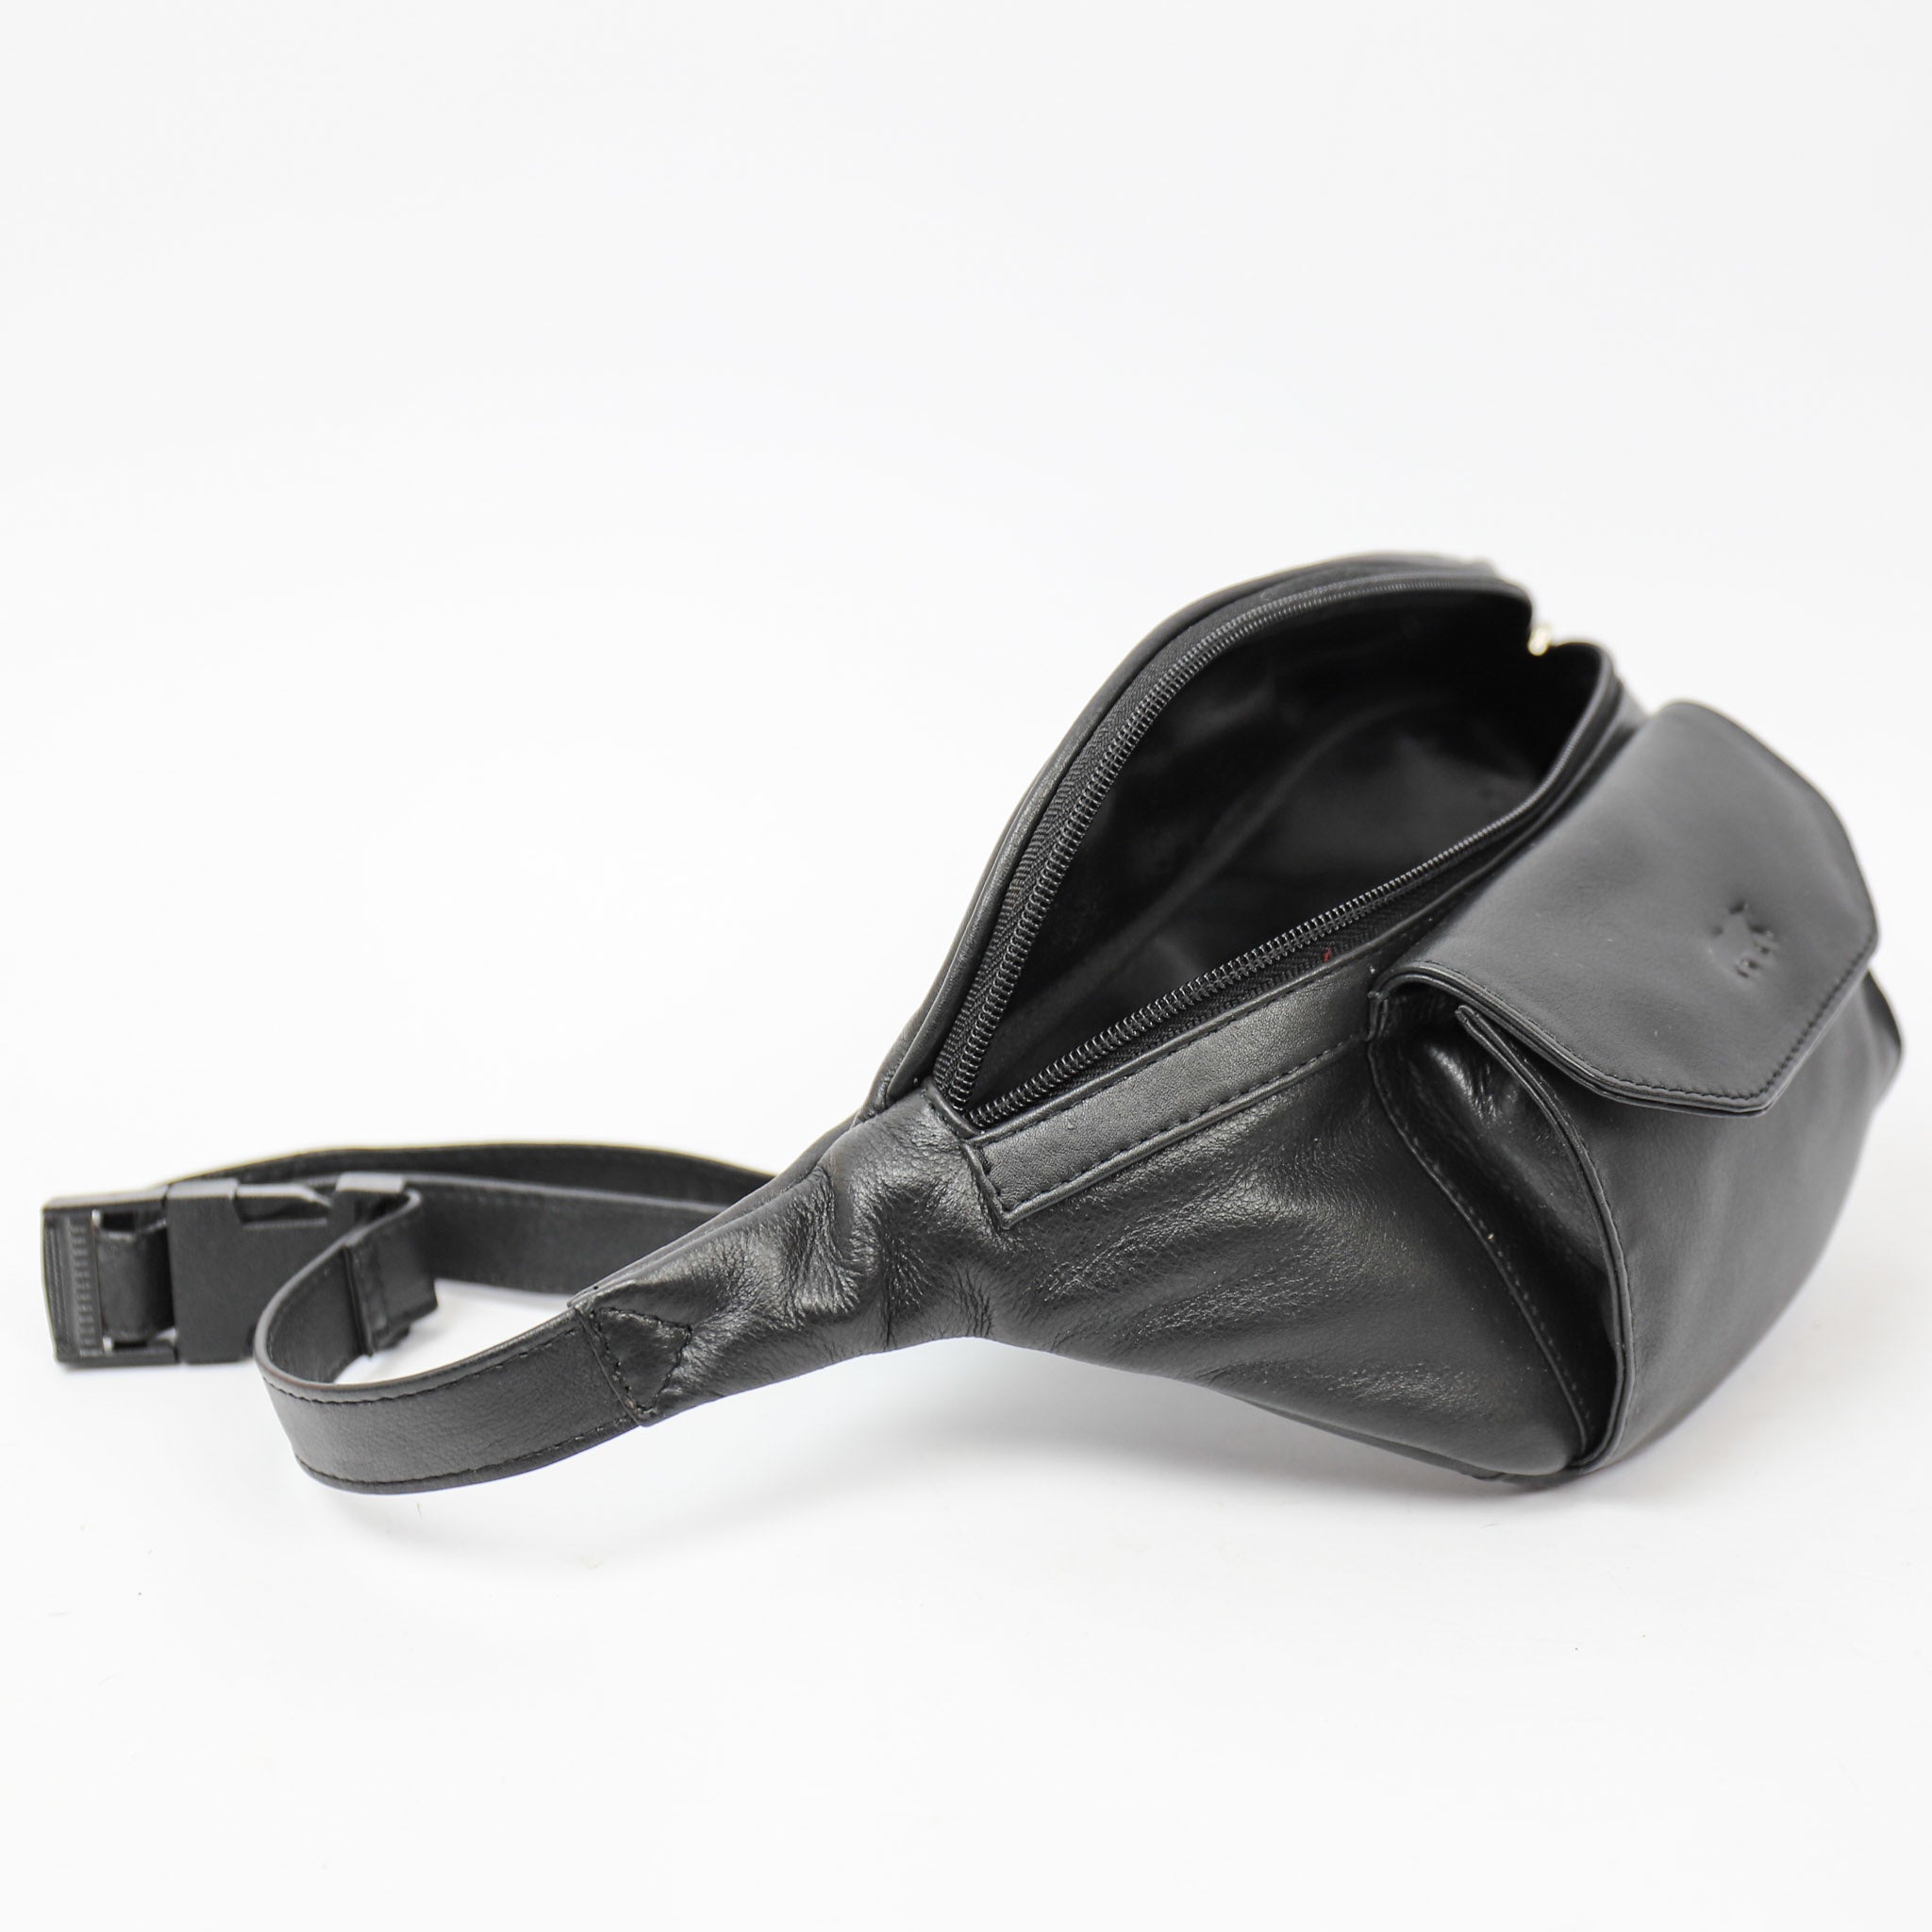 Belt bag 'Noa' black - B 5738